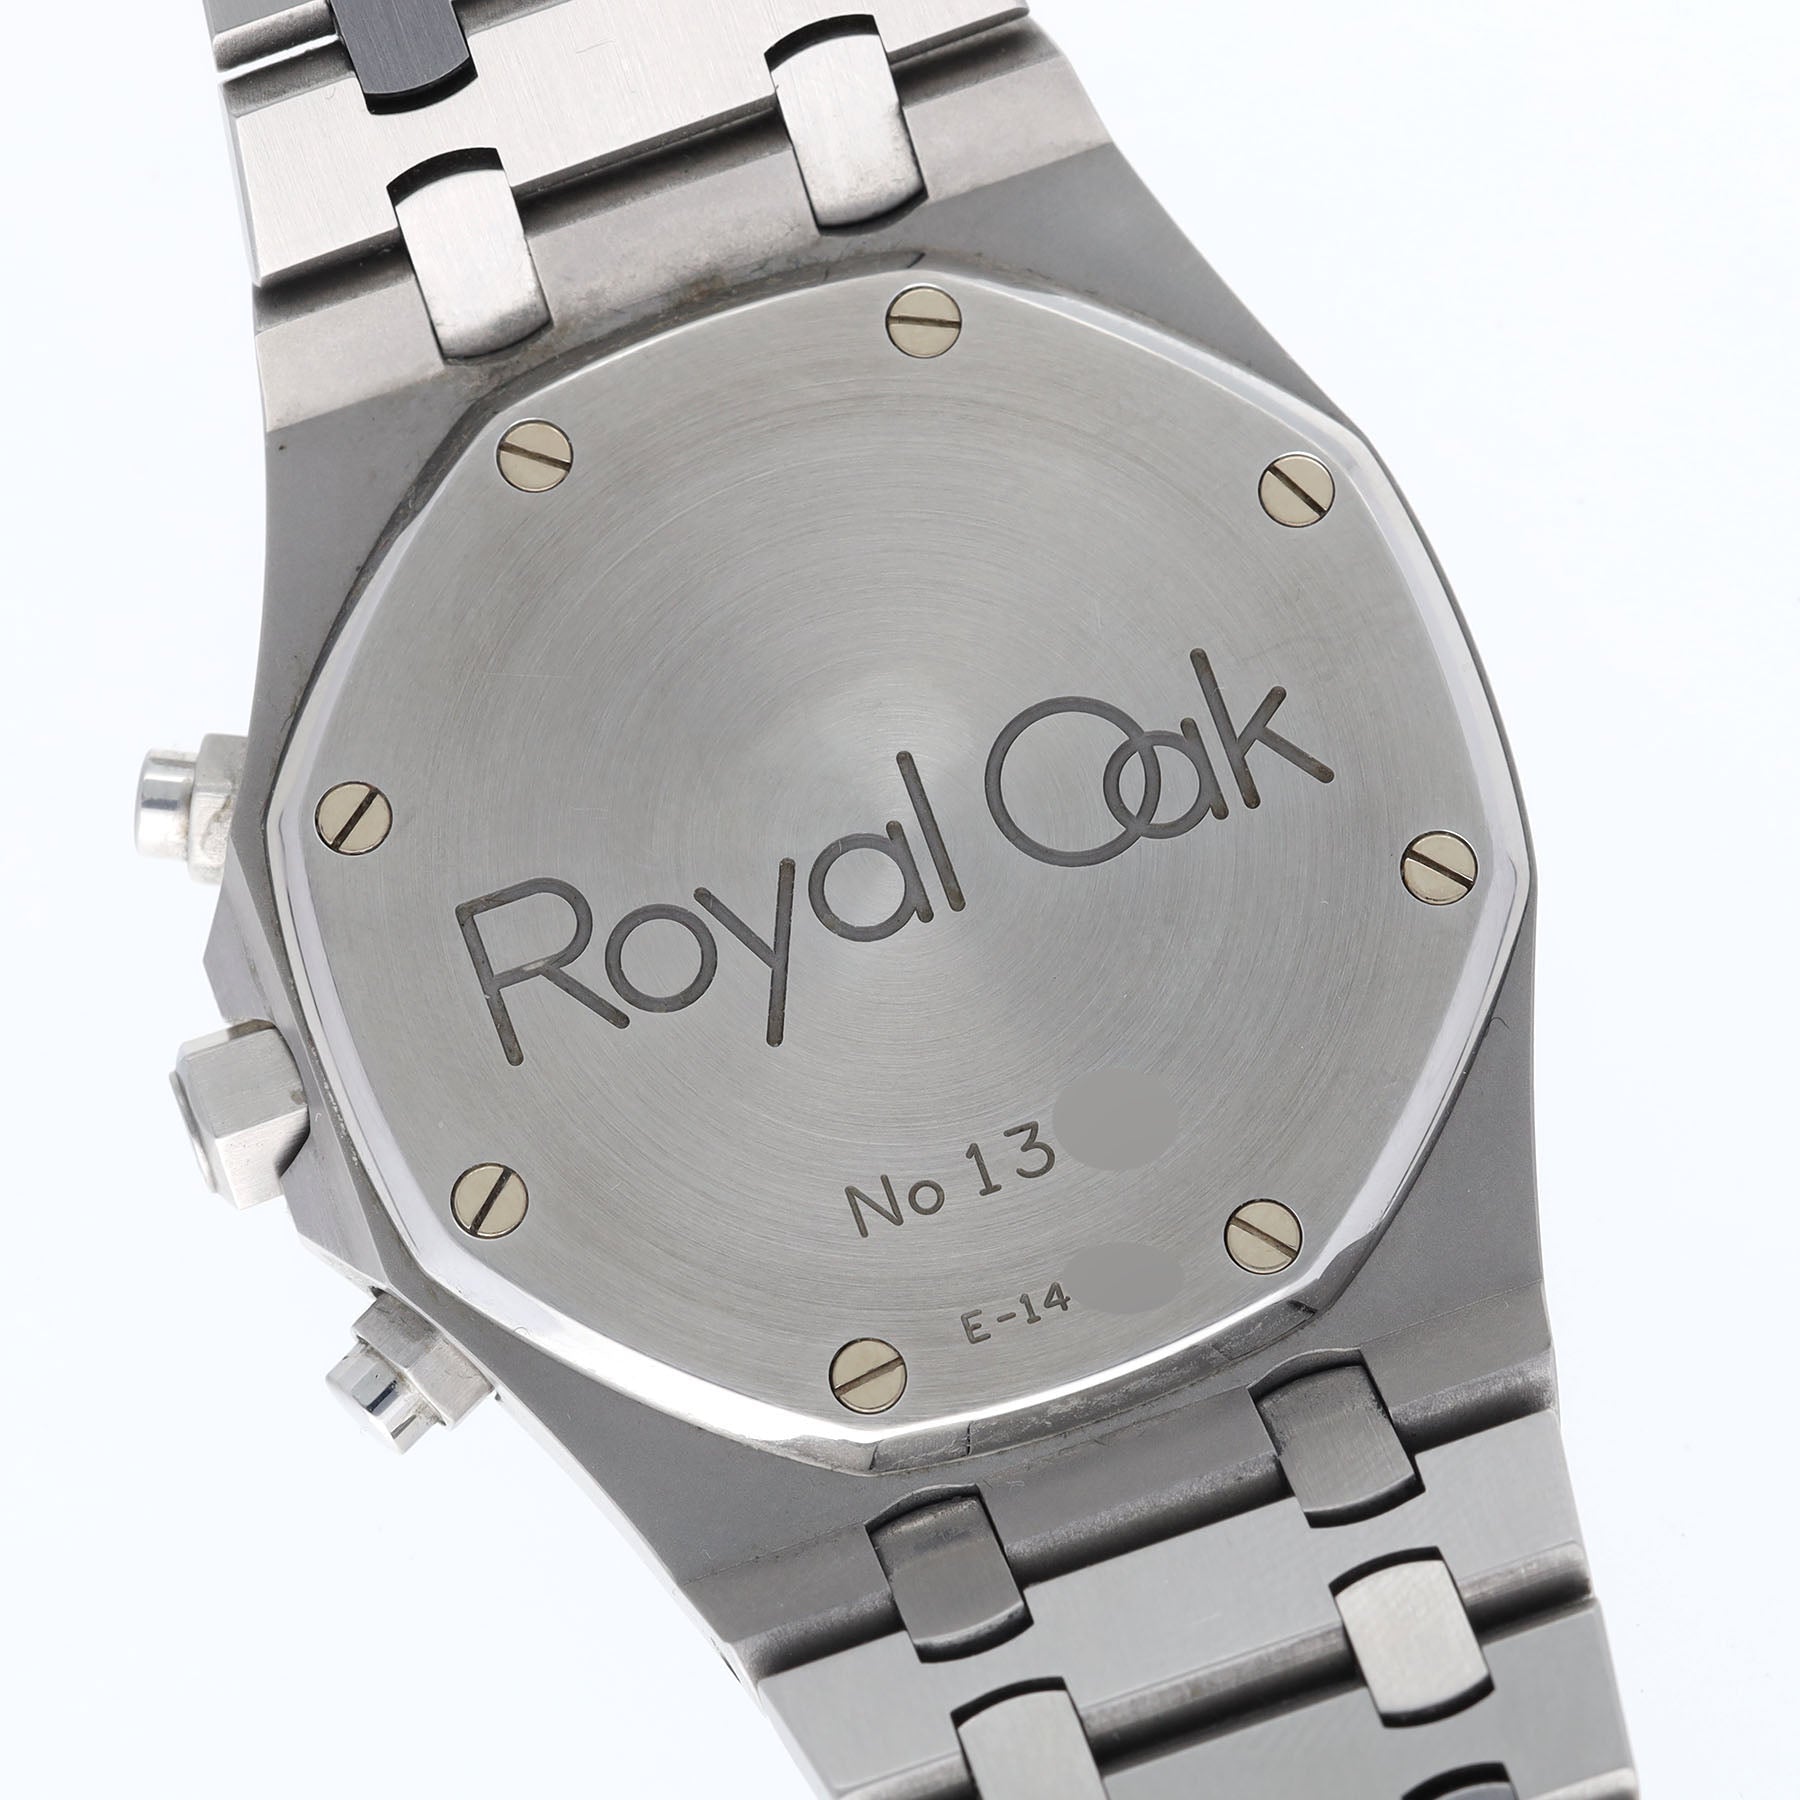 Audemars Piguet Royal Oak chronograph ref. 25860ST "Kasparov" Blue dial